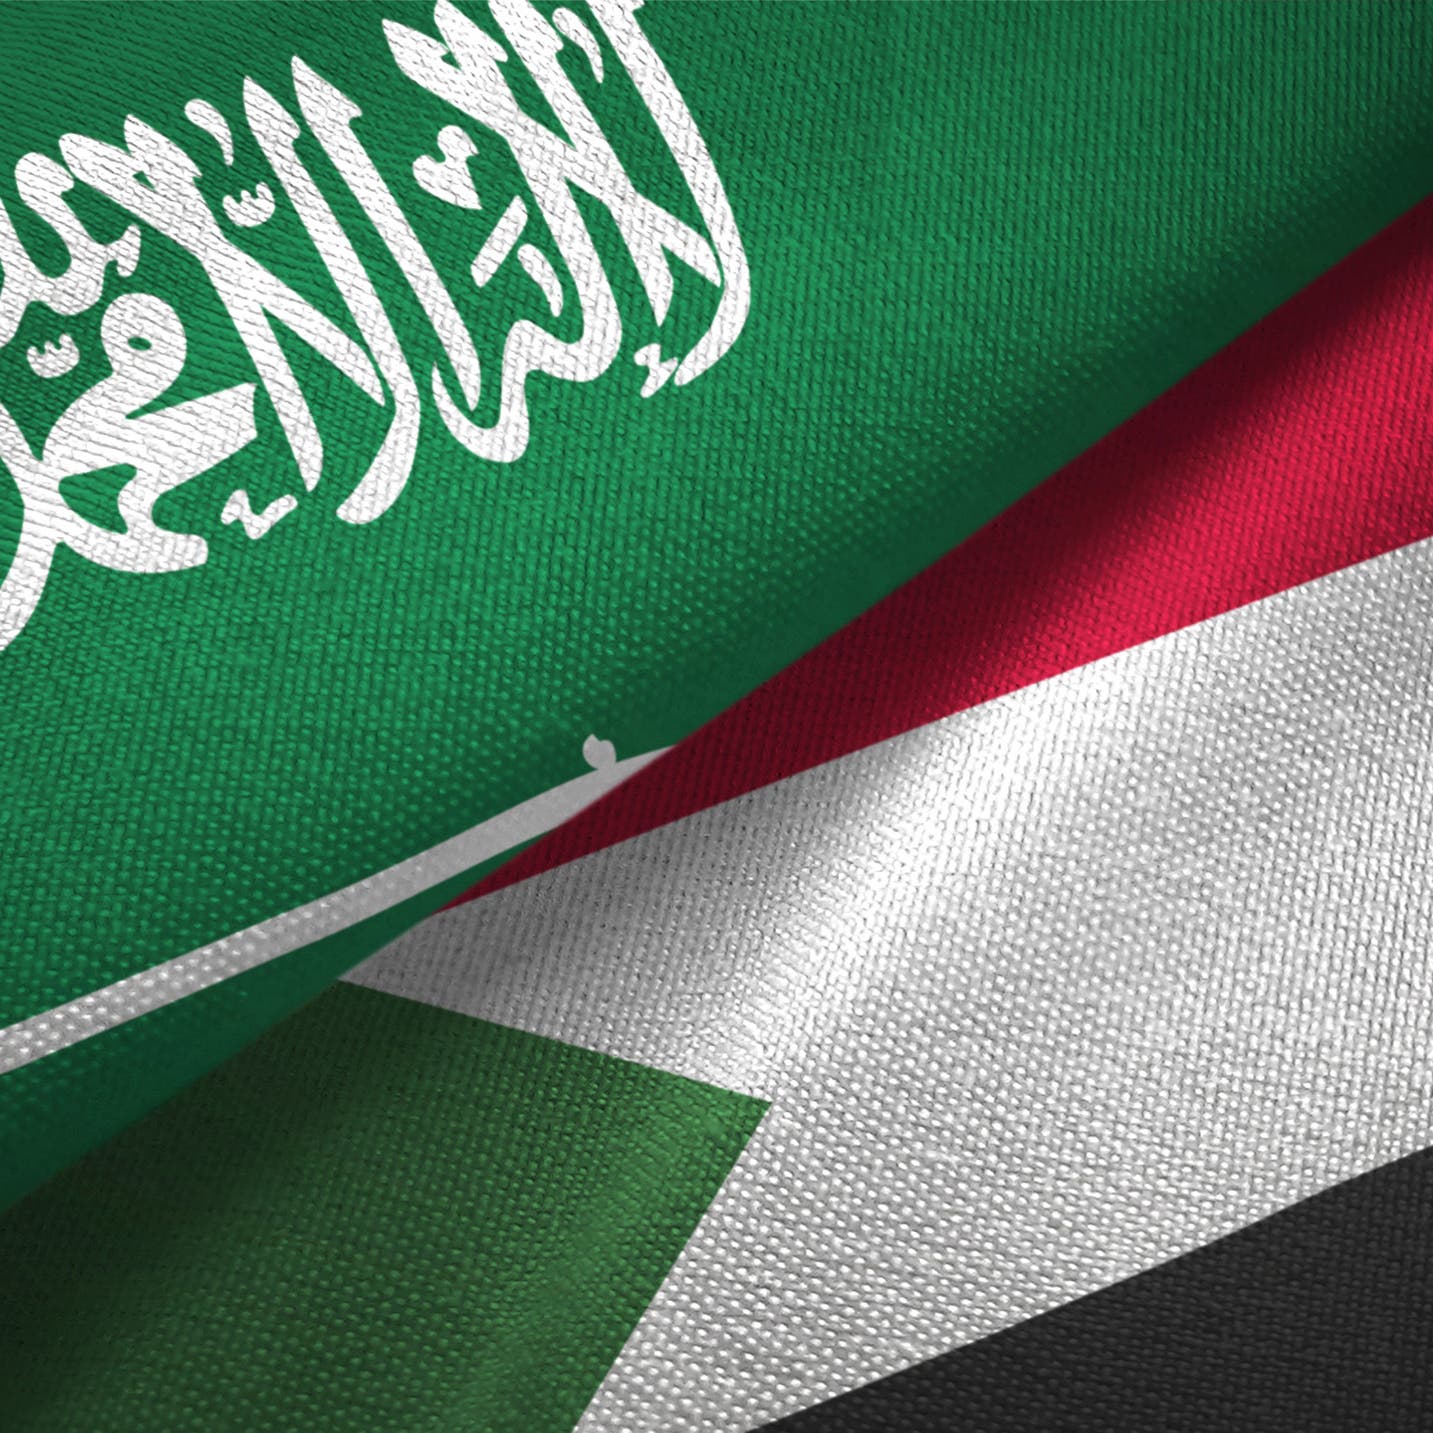 السيادة السوداني: نتشارك مع السعودية رؤية واحدة لأمن المنطقة